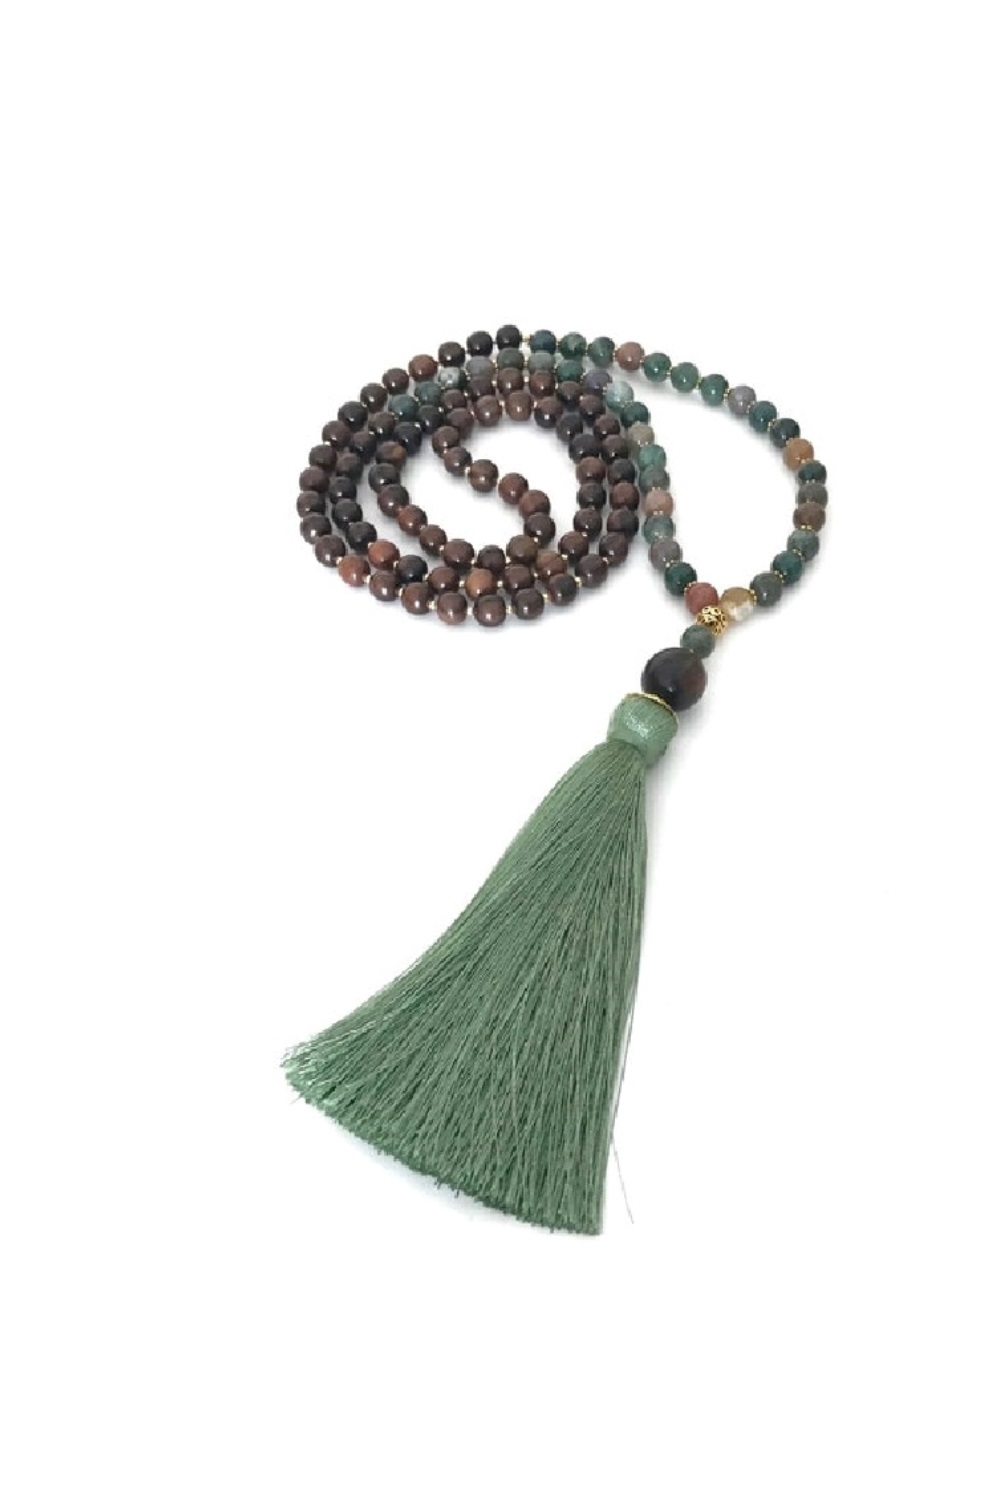 Mala Beads - Mala Necklace